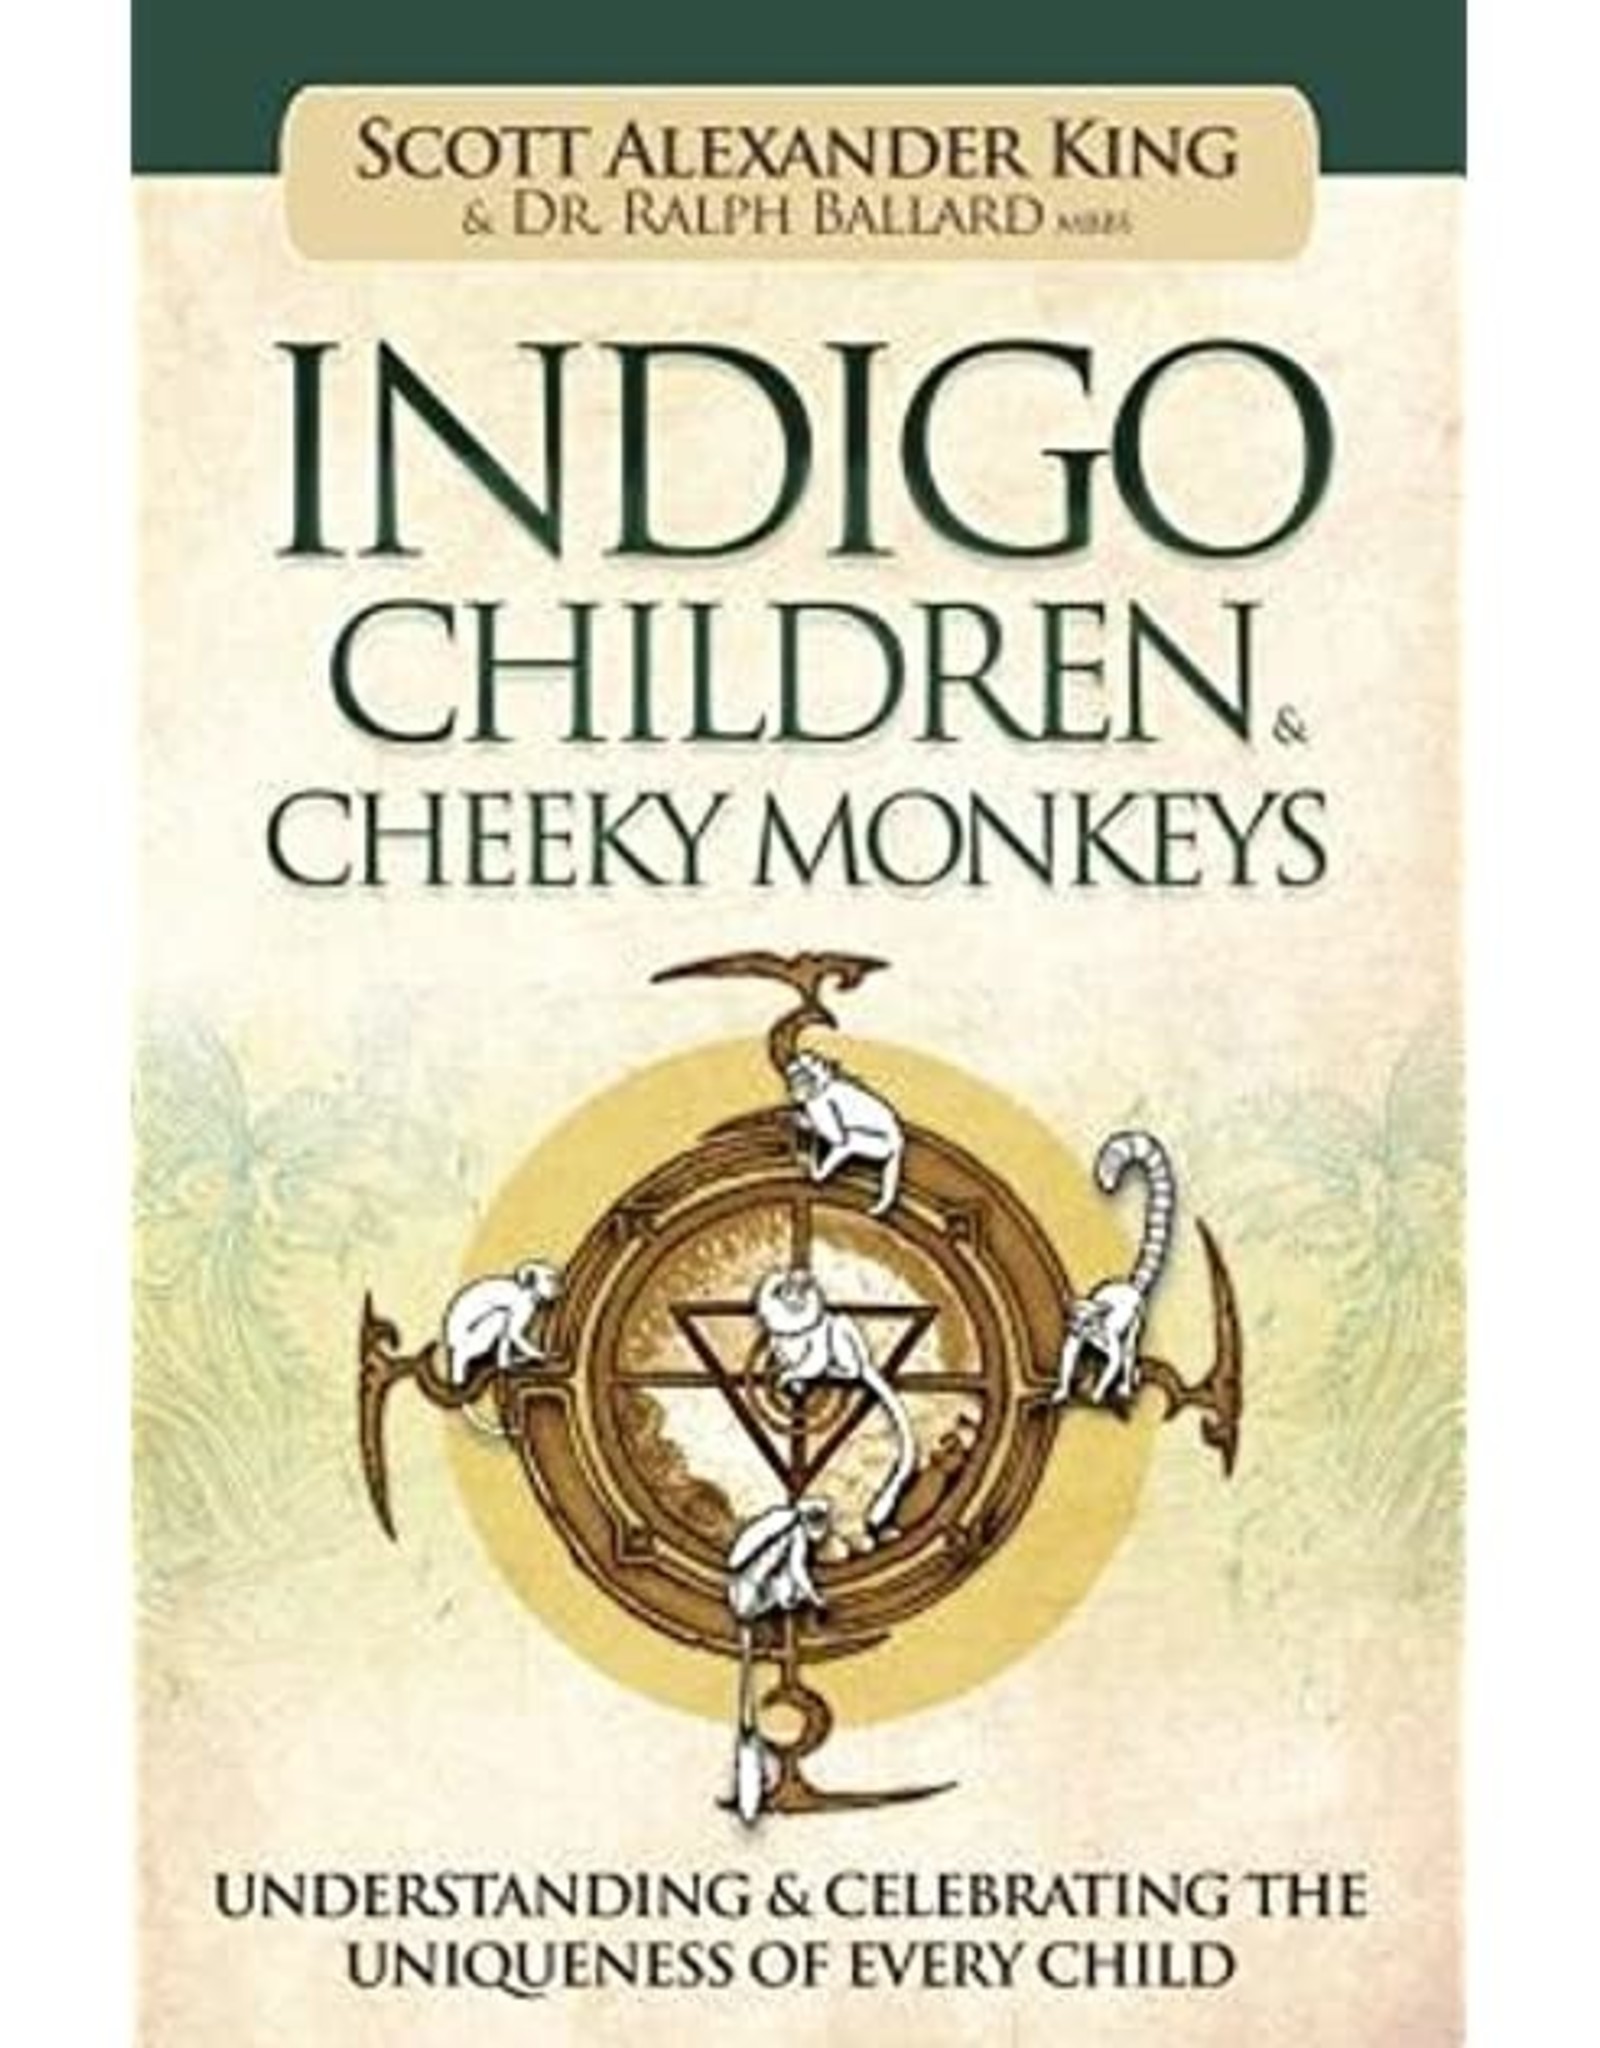 Scott Alexander King Indigo Children & Cheeky Monkeys by Scott Alexander King